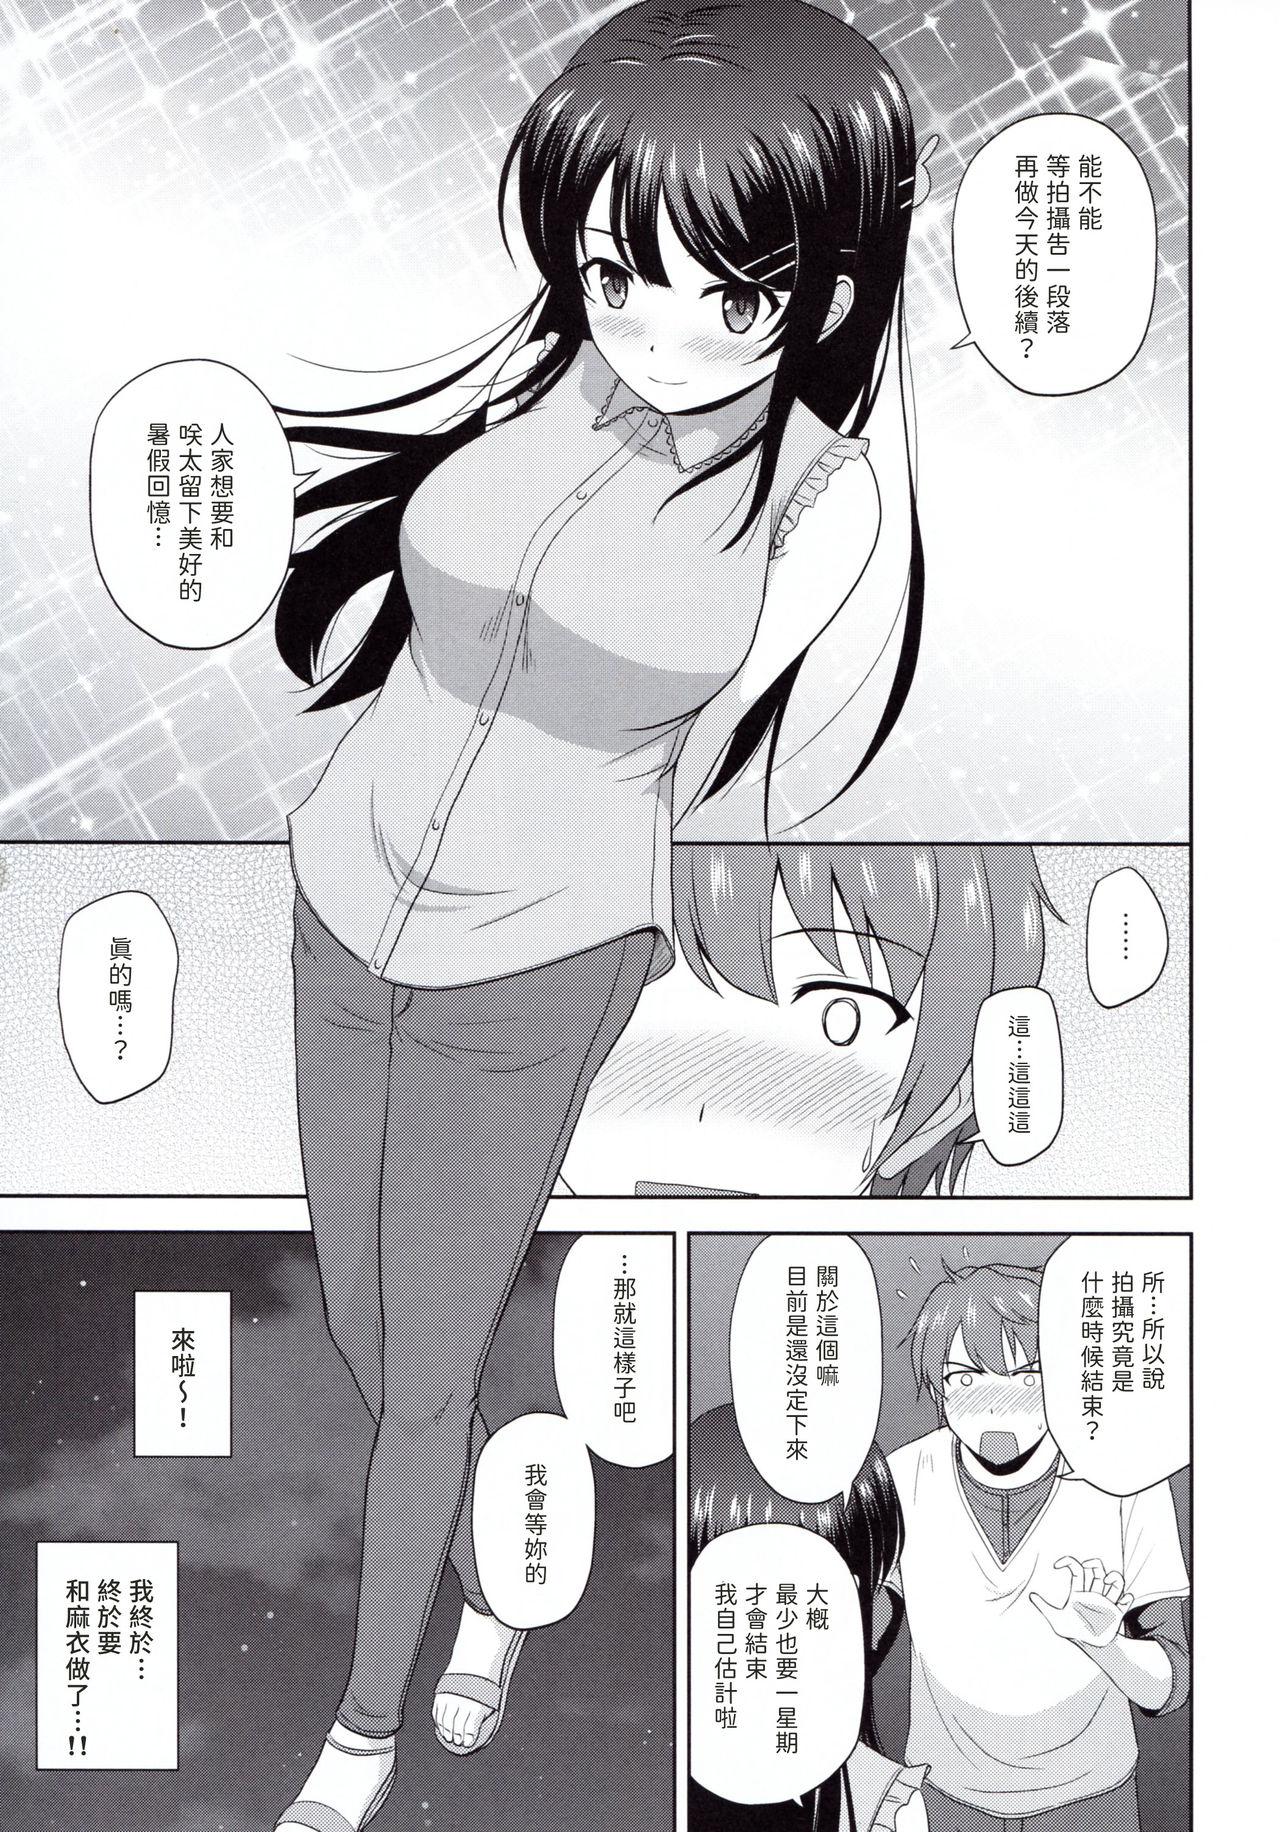 Solo Girl Seishun Black Time Killer - Seishun buta yarou wa bunny girl senpai no yume o minai Horny Slut - Page 4